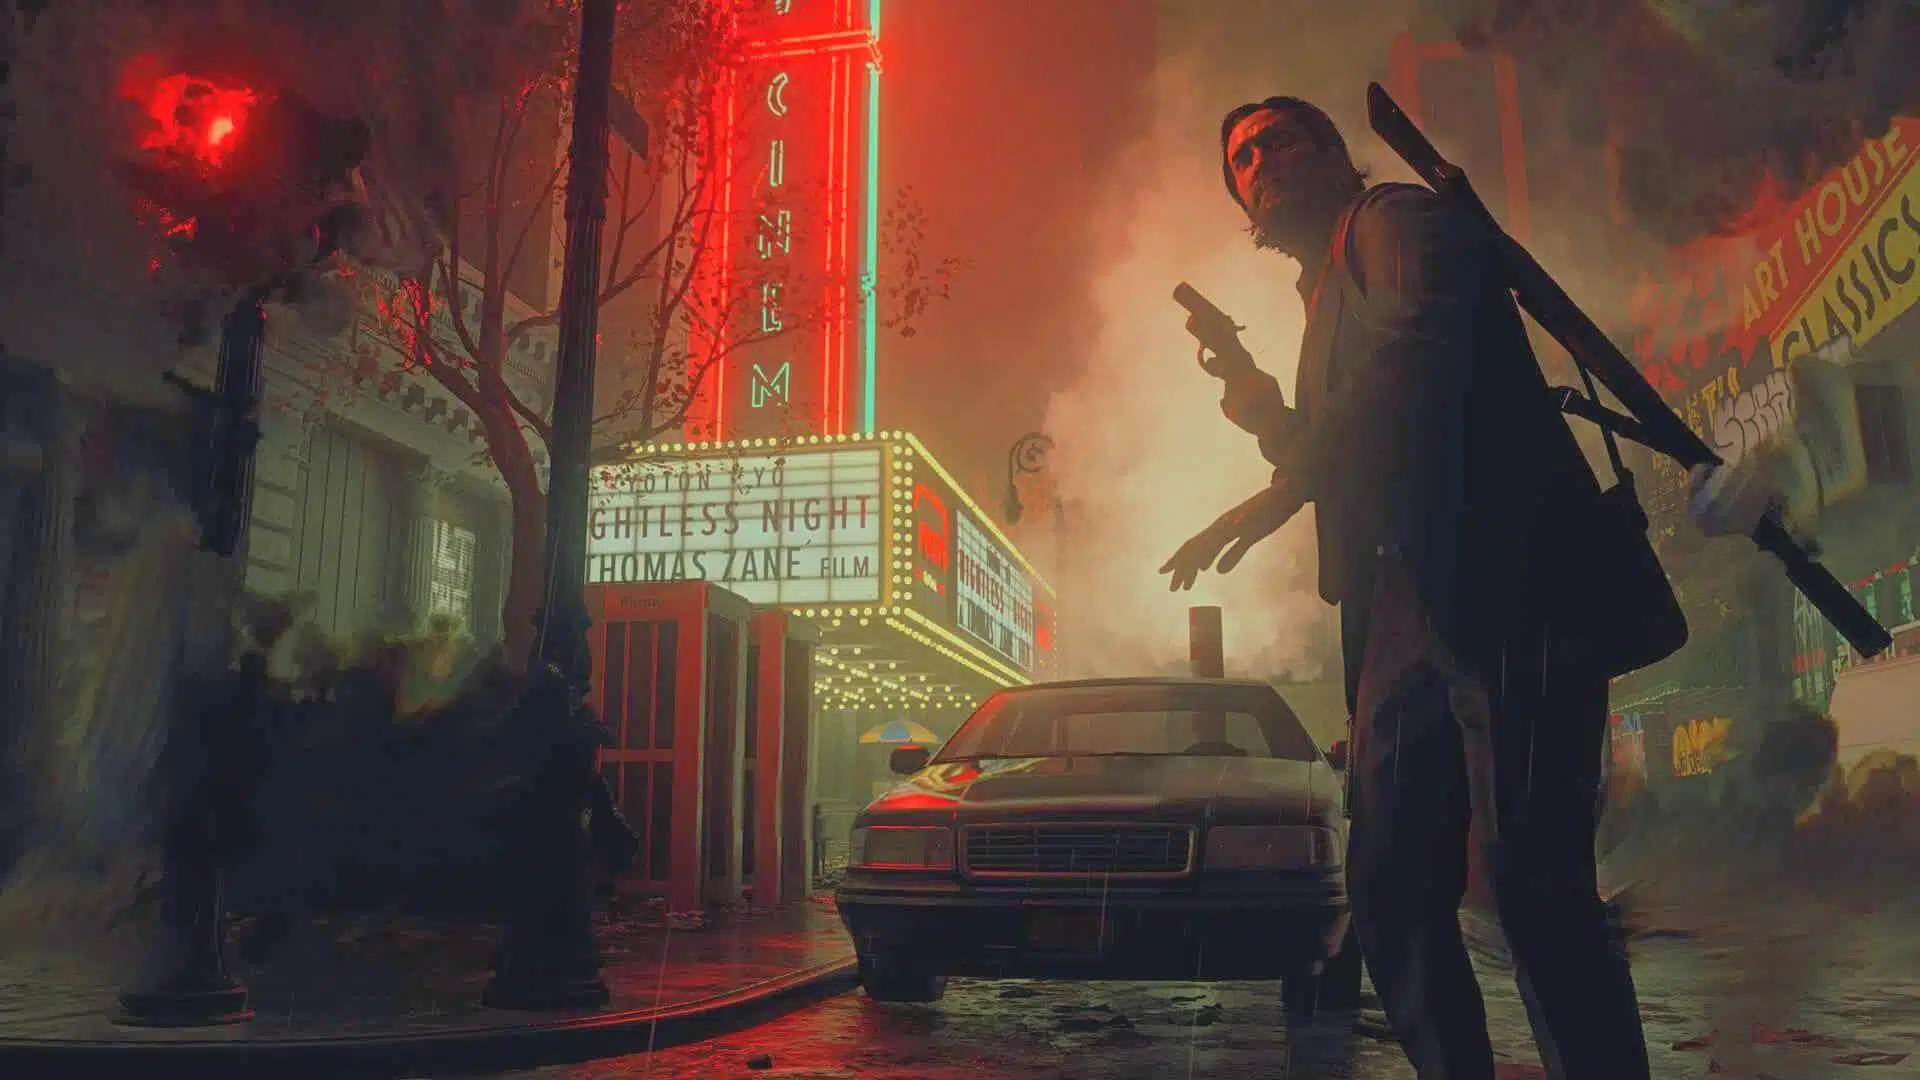 Personagem de Alan Wake 2 próximo a um carro em uma ambientação escura